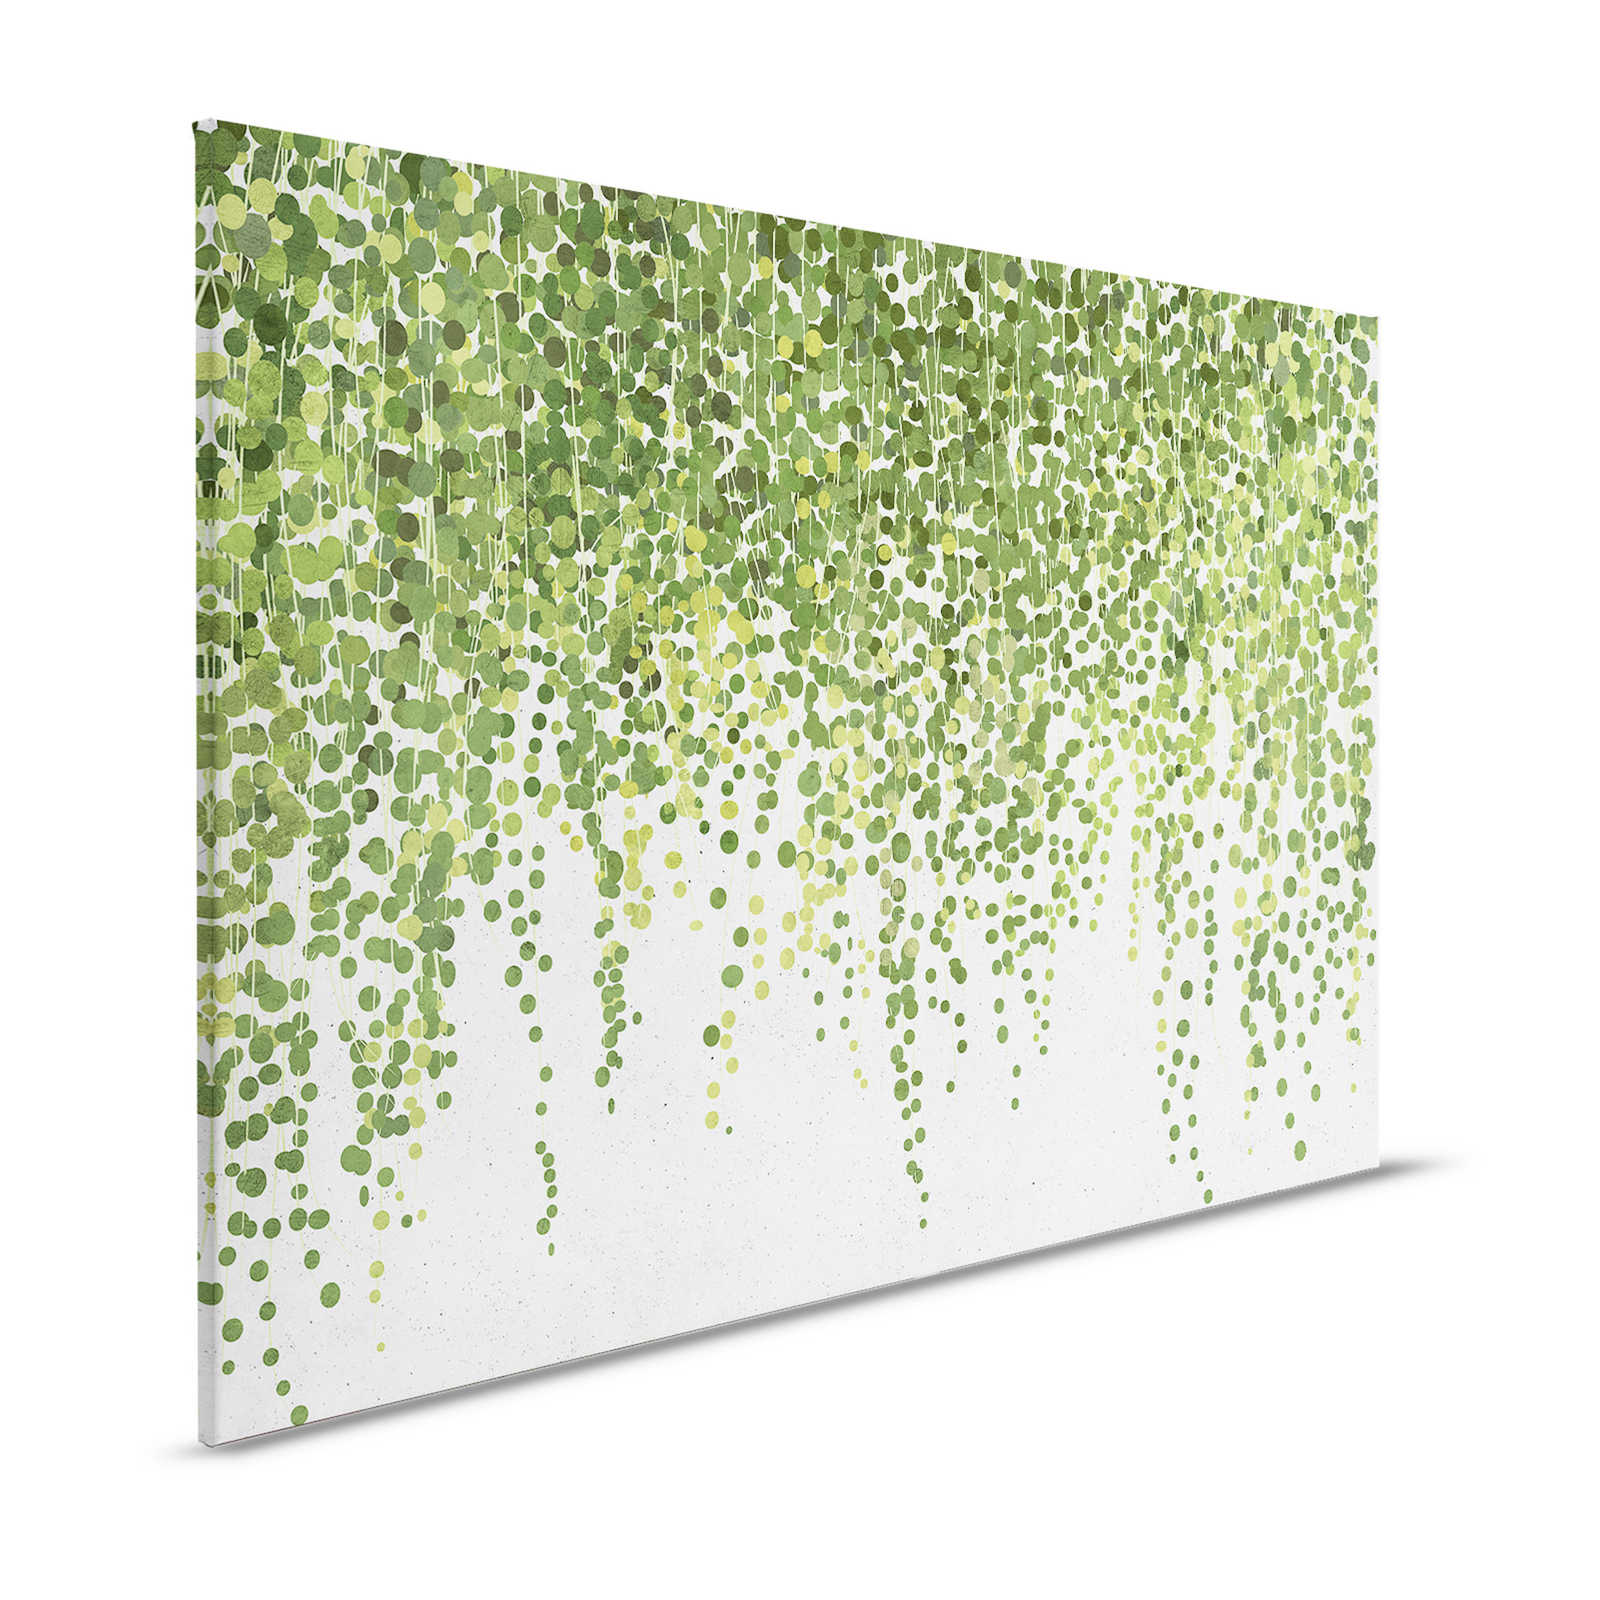 Hanging Garden 1 - toile feuilles et vrilles, jardin suspendu aspect béton - 1,20 m x 0,80 m
